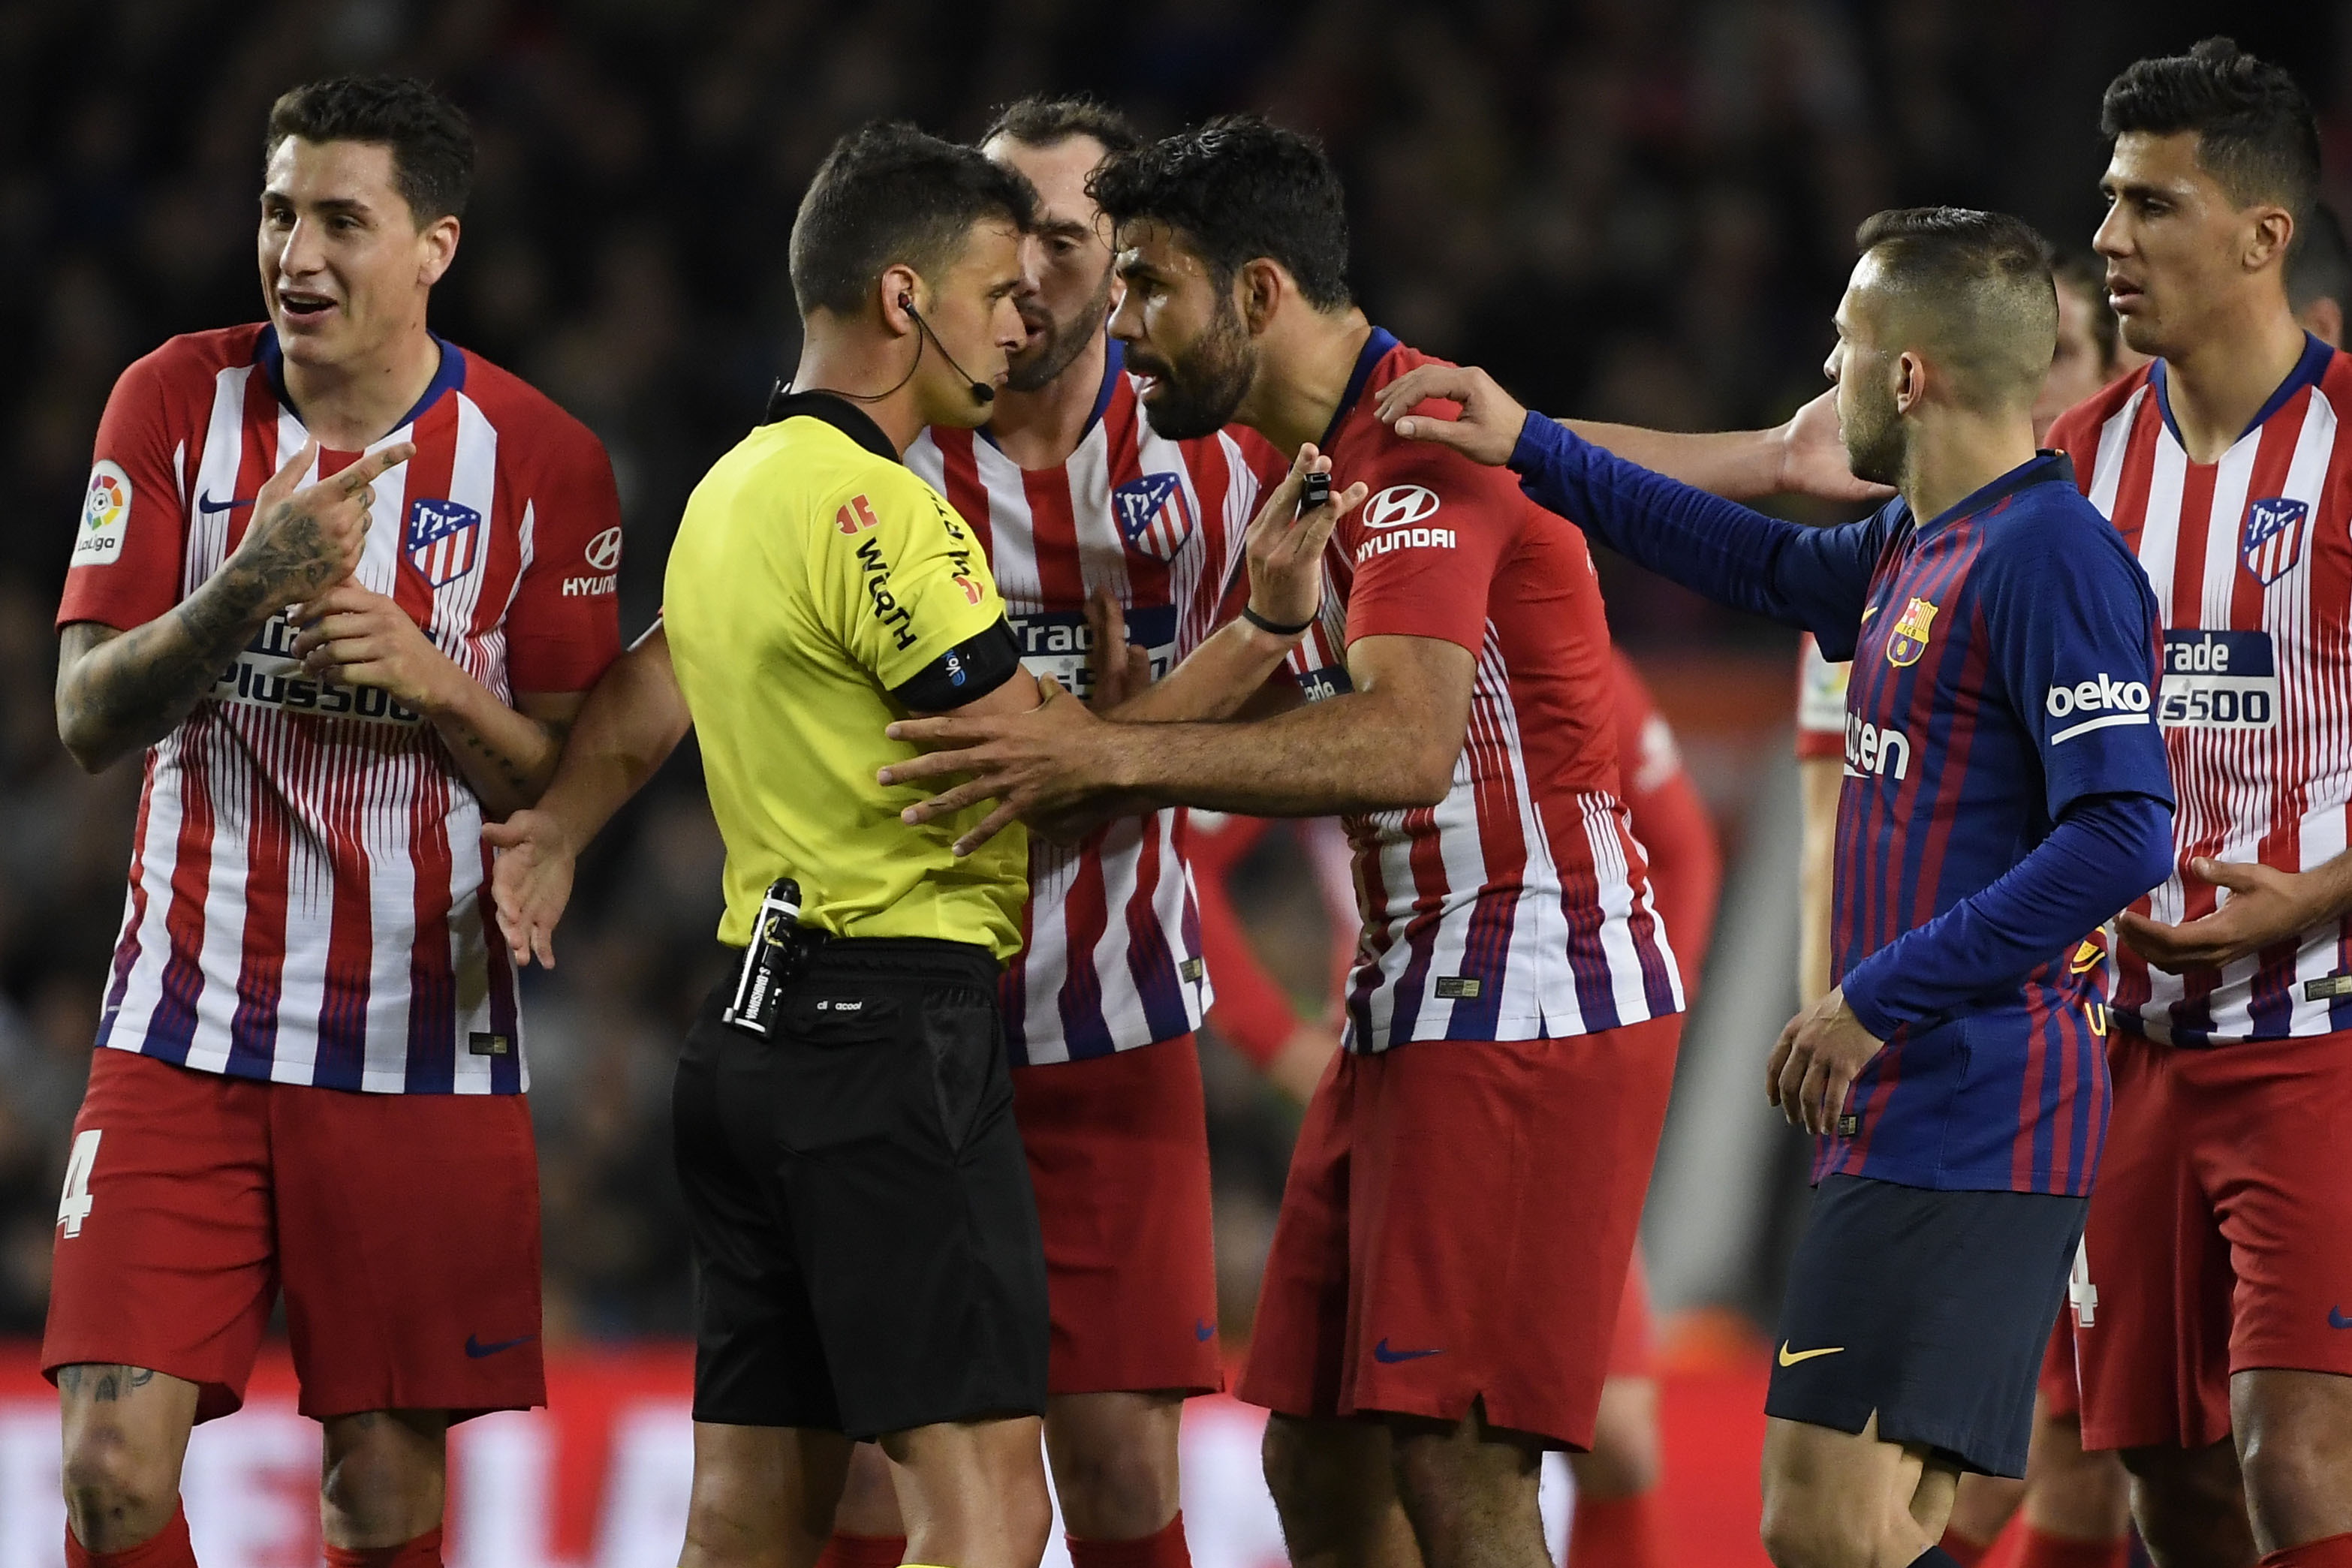 Los insultos de Diego Costa al árbitro le costaron el resto de la temporada en la Liga española. (Foto Prensa Libre: AFP)